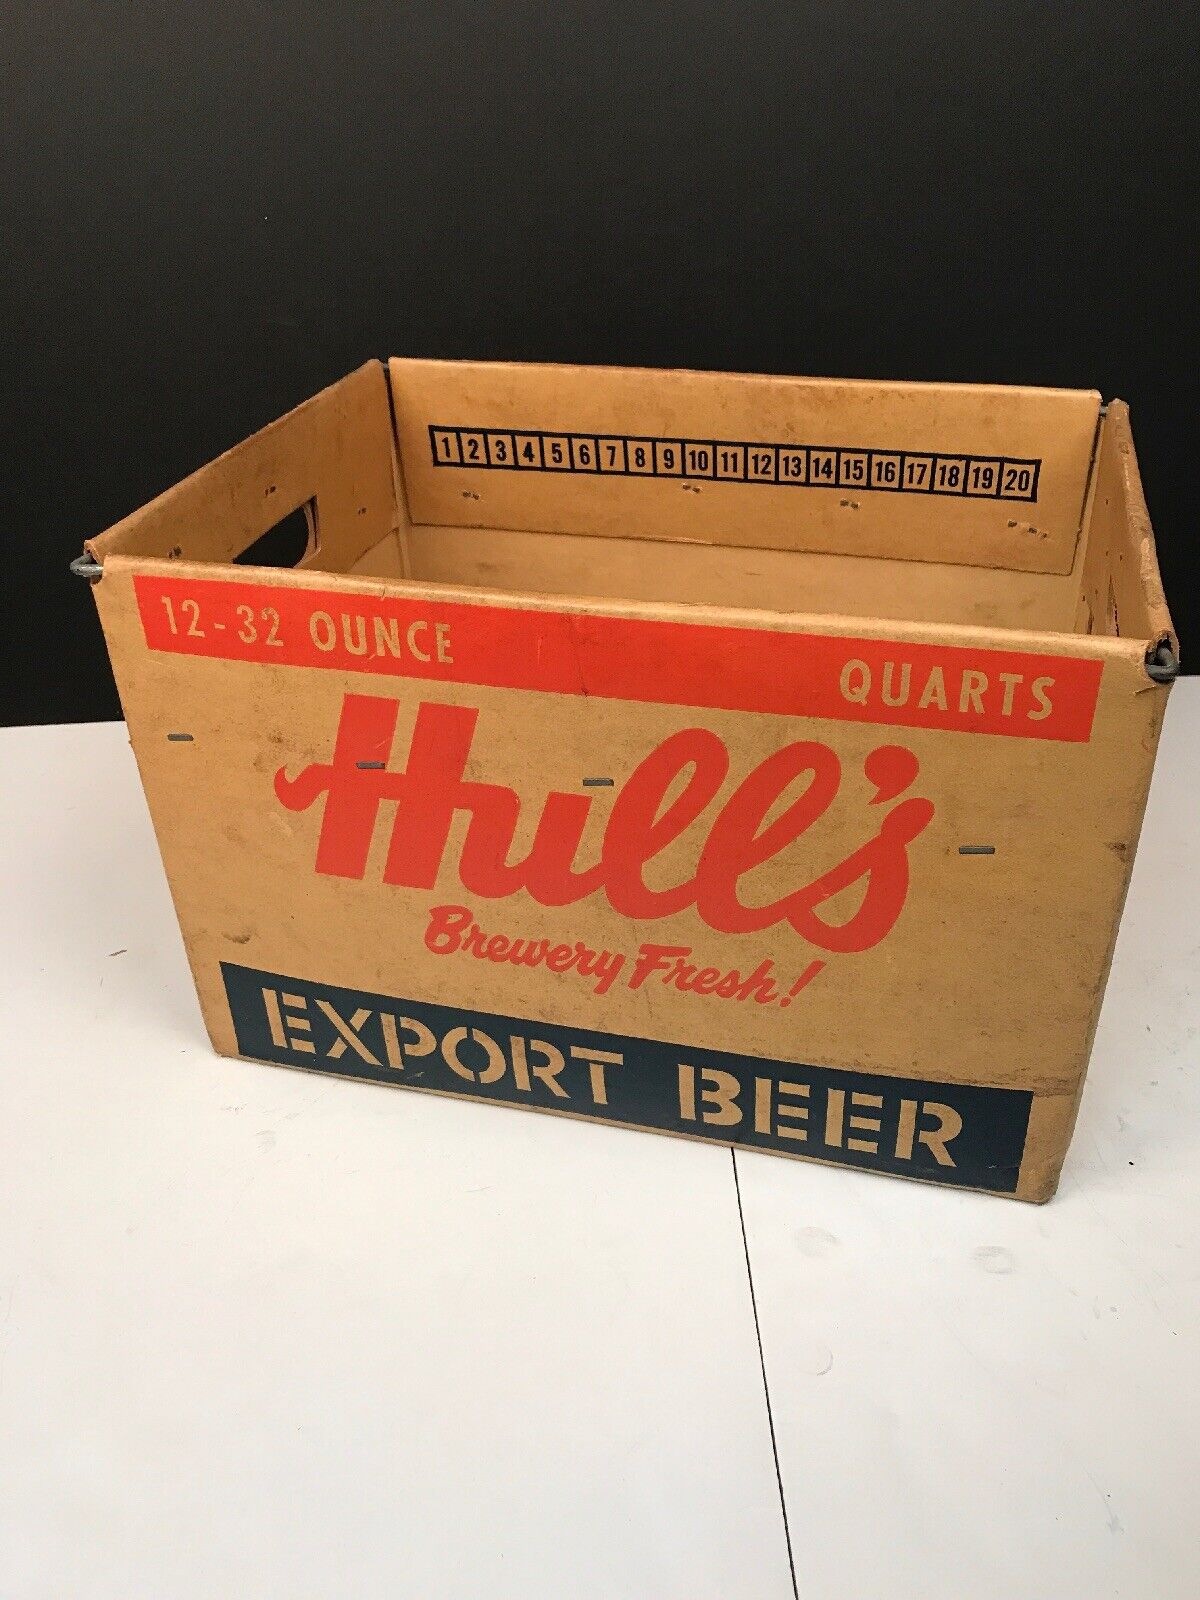 Vintage Hull’s Export Beer 12-32 Oz. Cardboard Beer Bottle Crate